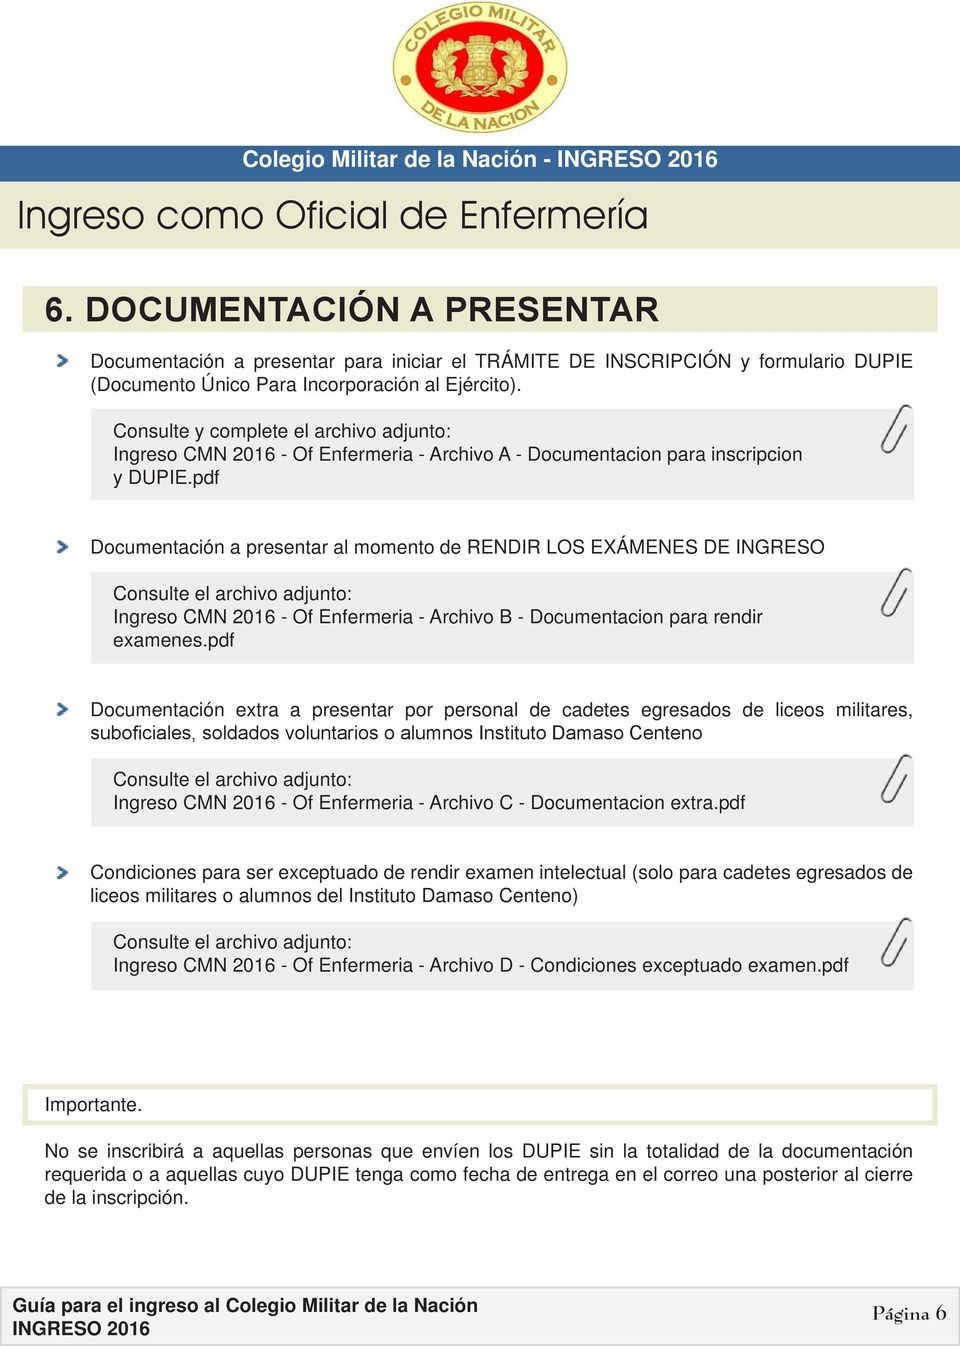 pdf Documentación a presentar al momento de RENDIR LOS EXÁMENES DE INGRESO Consulte el archivo adjunto: Ingreso CMN 2016 - Of Enfermeria - Archivo B - Documentacion para rendir examenes.